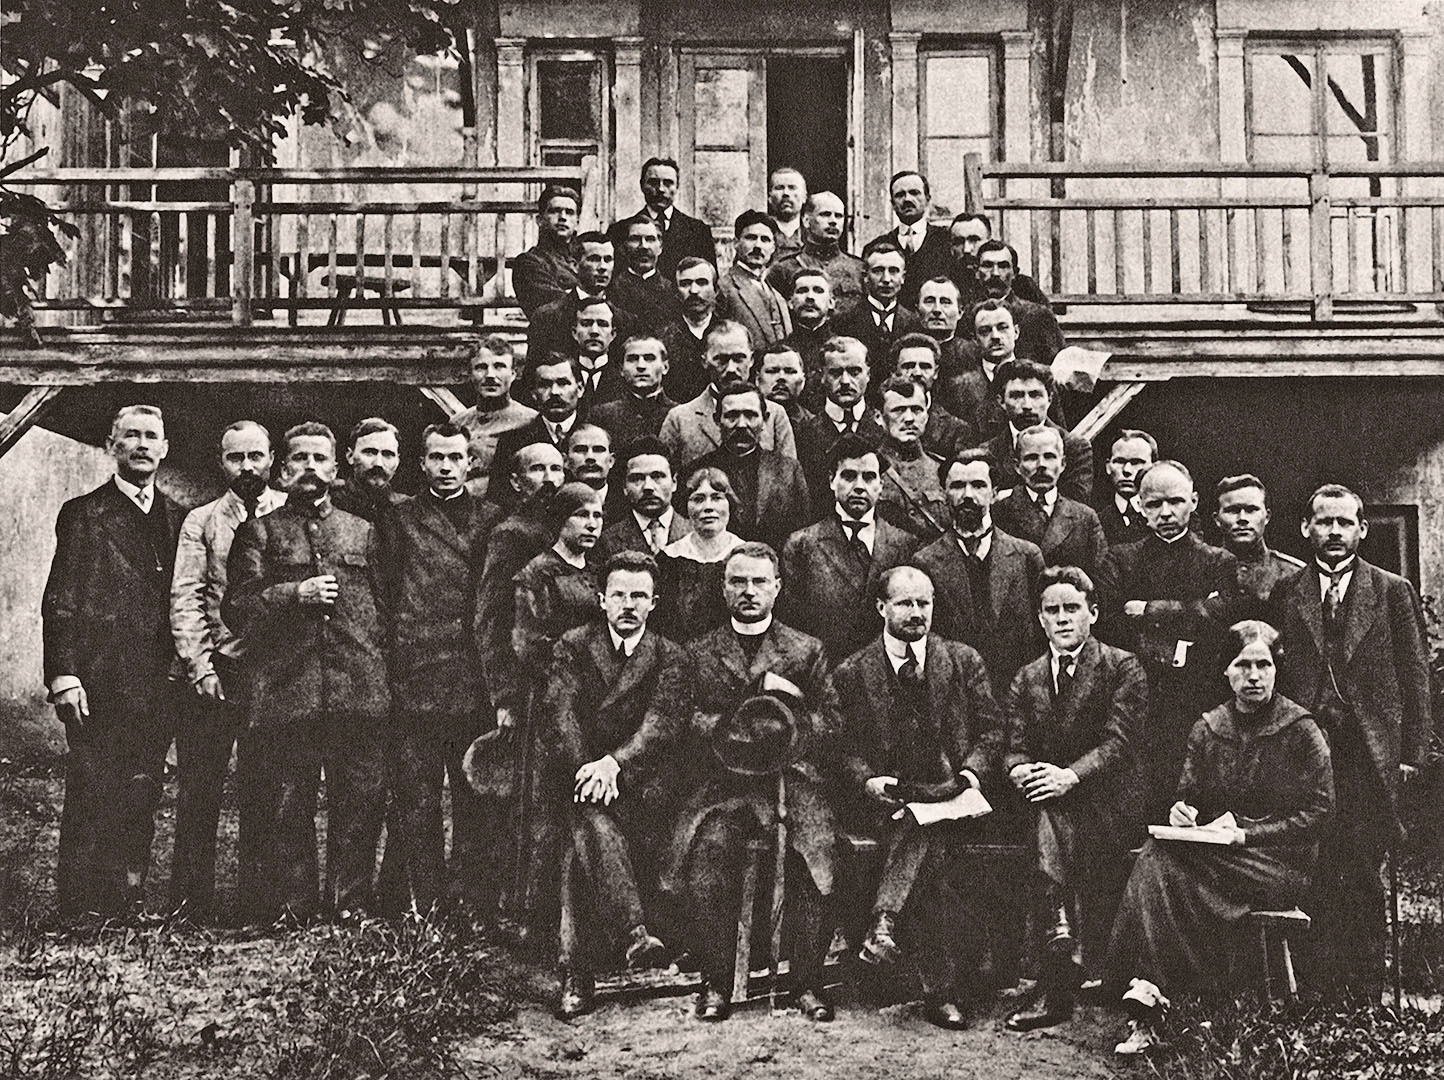 Steigiamojo Seimo valdančioji dauguma ‒ Krikščionių demokratų blokas. Kaunas, 1920 m. gegužė. Lietuvos nacionalinis muziejus